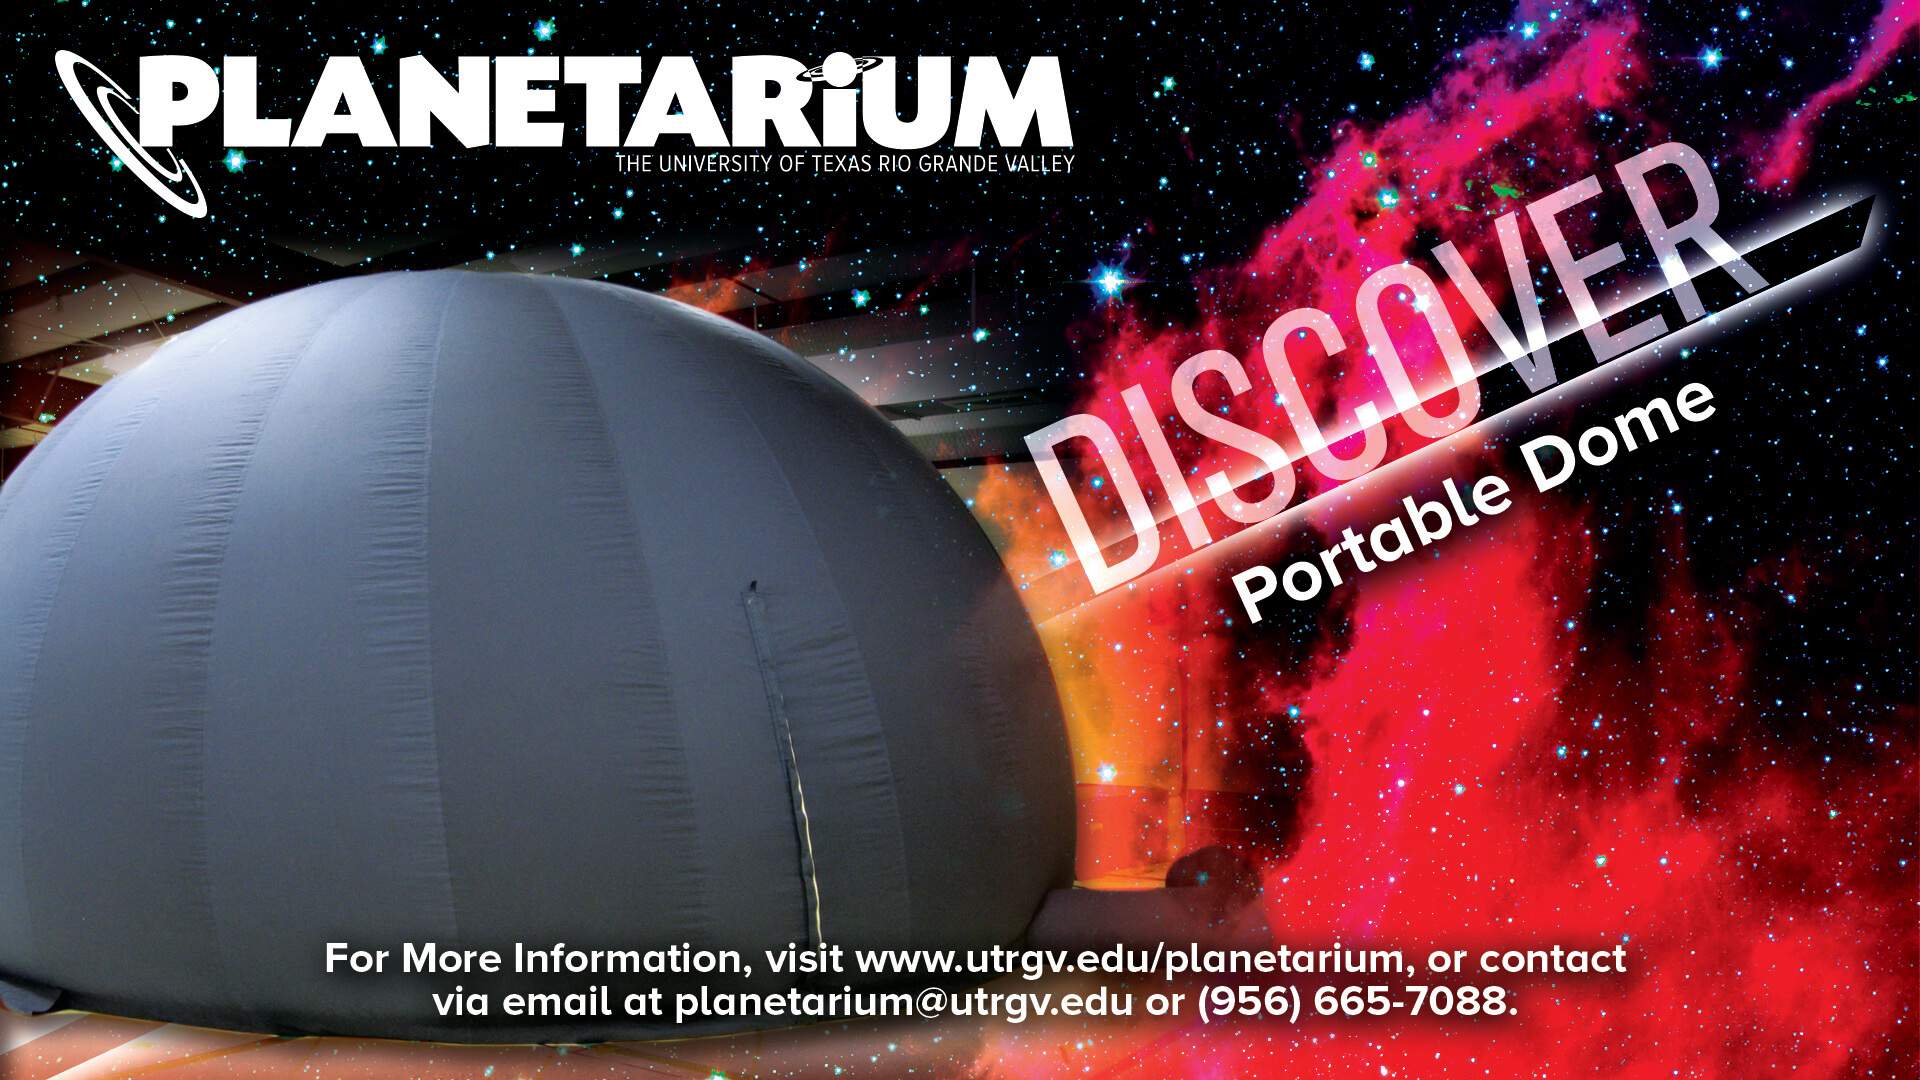 Outreach - Planetarium | Discover: Portable Dome | For more information, visit www.utrgv.edu/planetarium, or contact via email at planetarium@utrgv.edu or (956) 665-7088